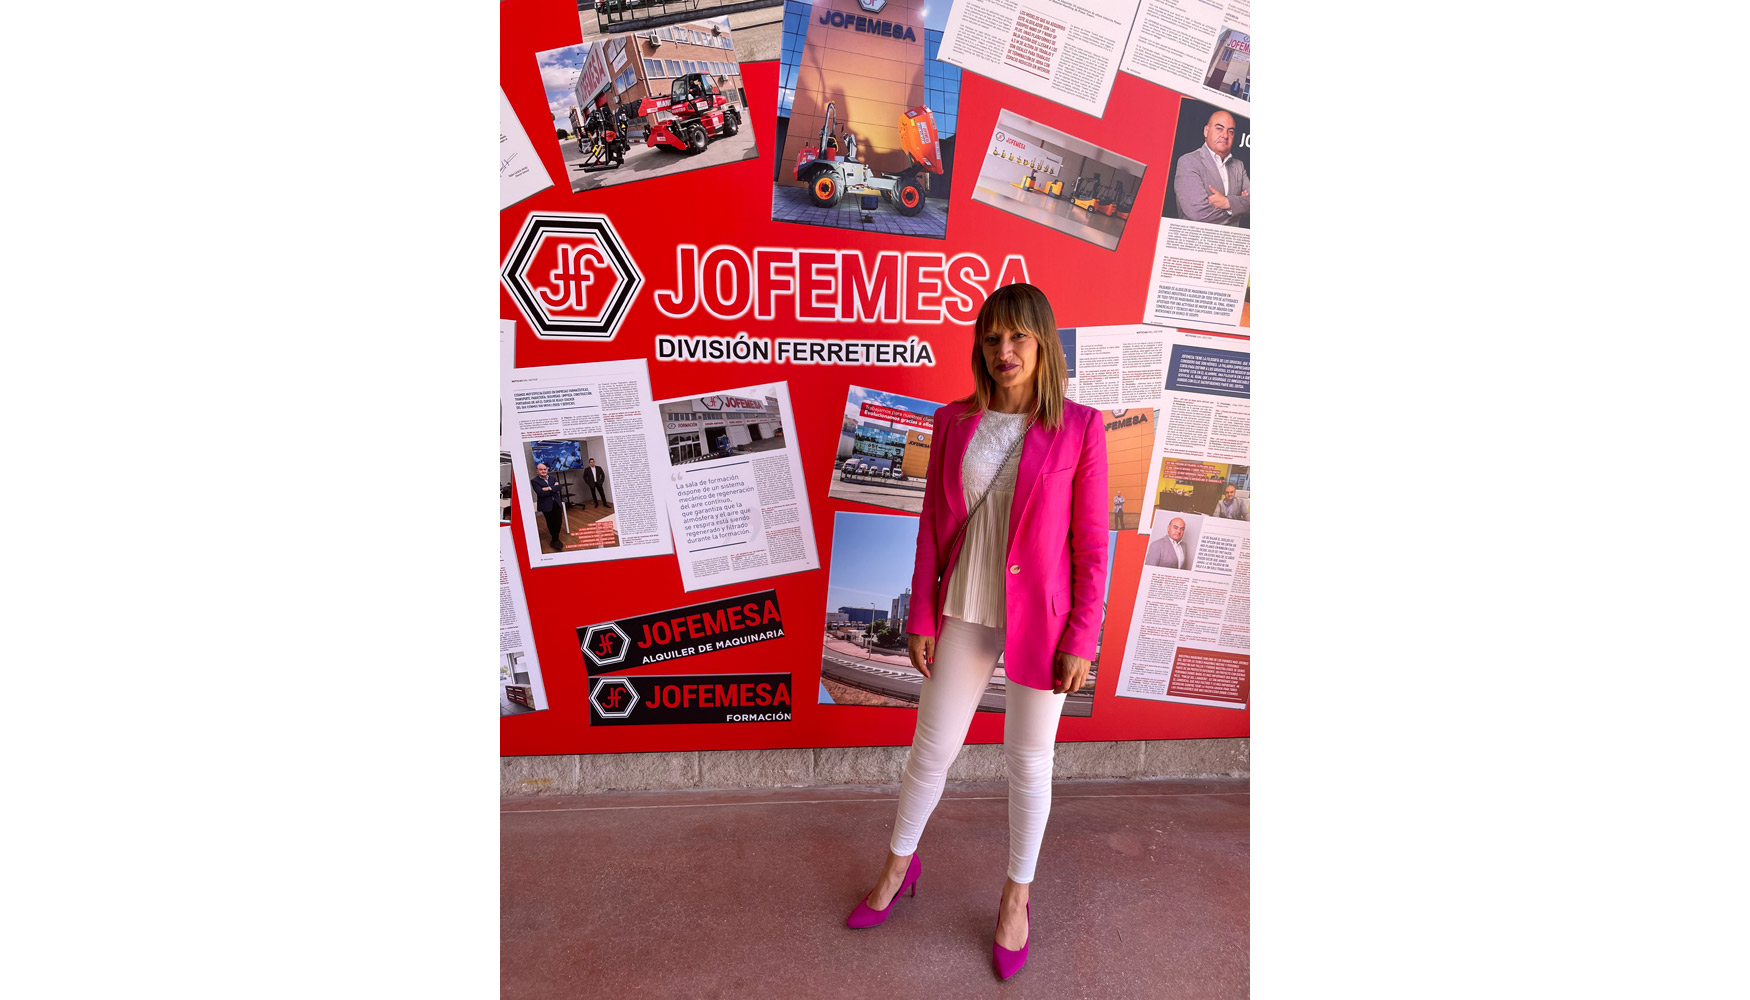 Eva Ameln Tejero, directora comercial de Jofemesa Ferretera Industrial